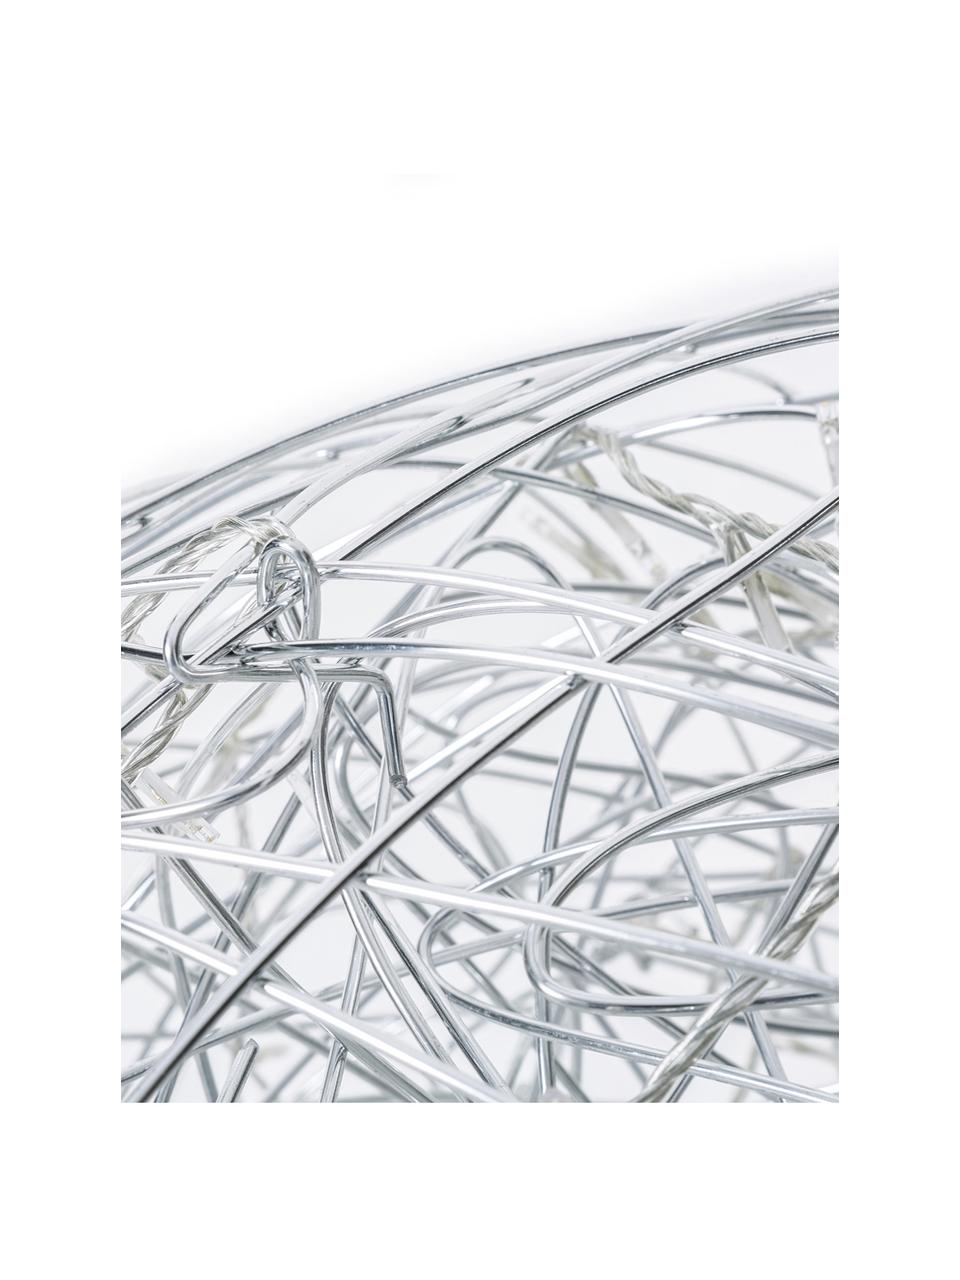 LED-Aussenleuchte Trassel mit Stecker, Leuchte: Metall, Aluminium, Silberfarben, Ø 38 cm